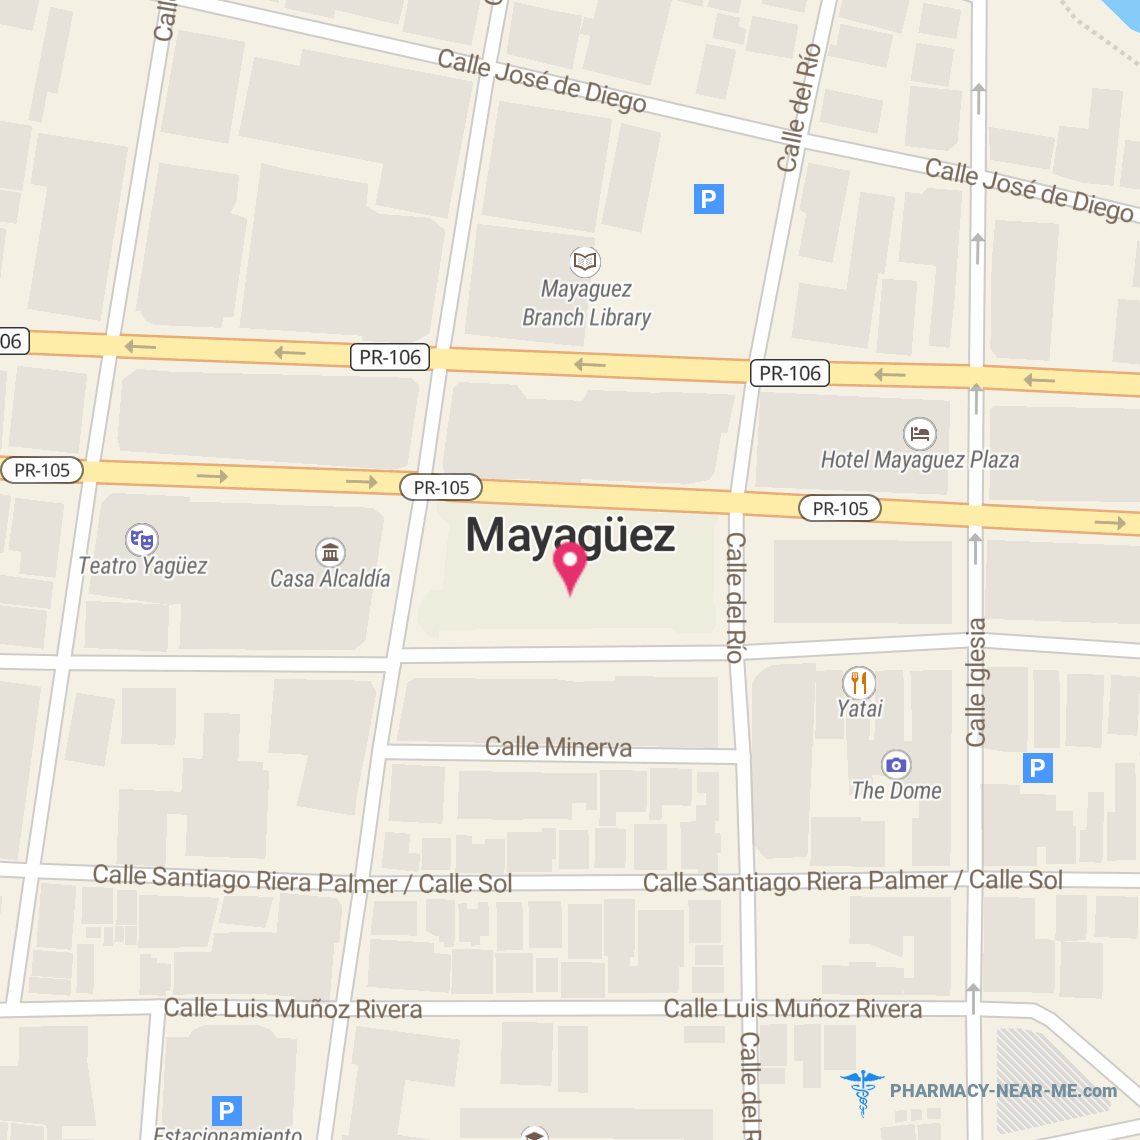 WALMART PHARMACY 10-2067 - Pharmacy Hours, Phone, Reviews & Information: Mayagüez, PR